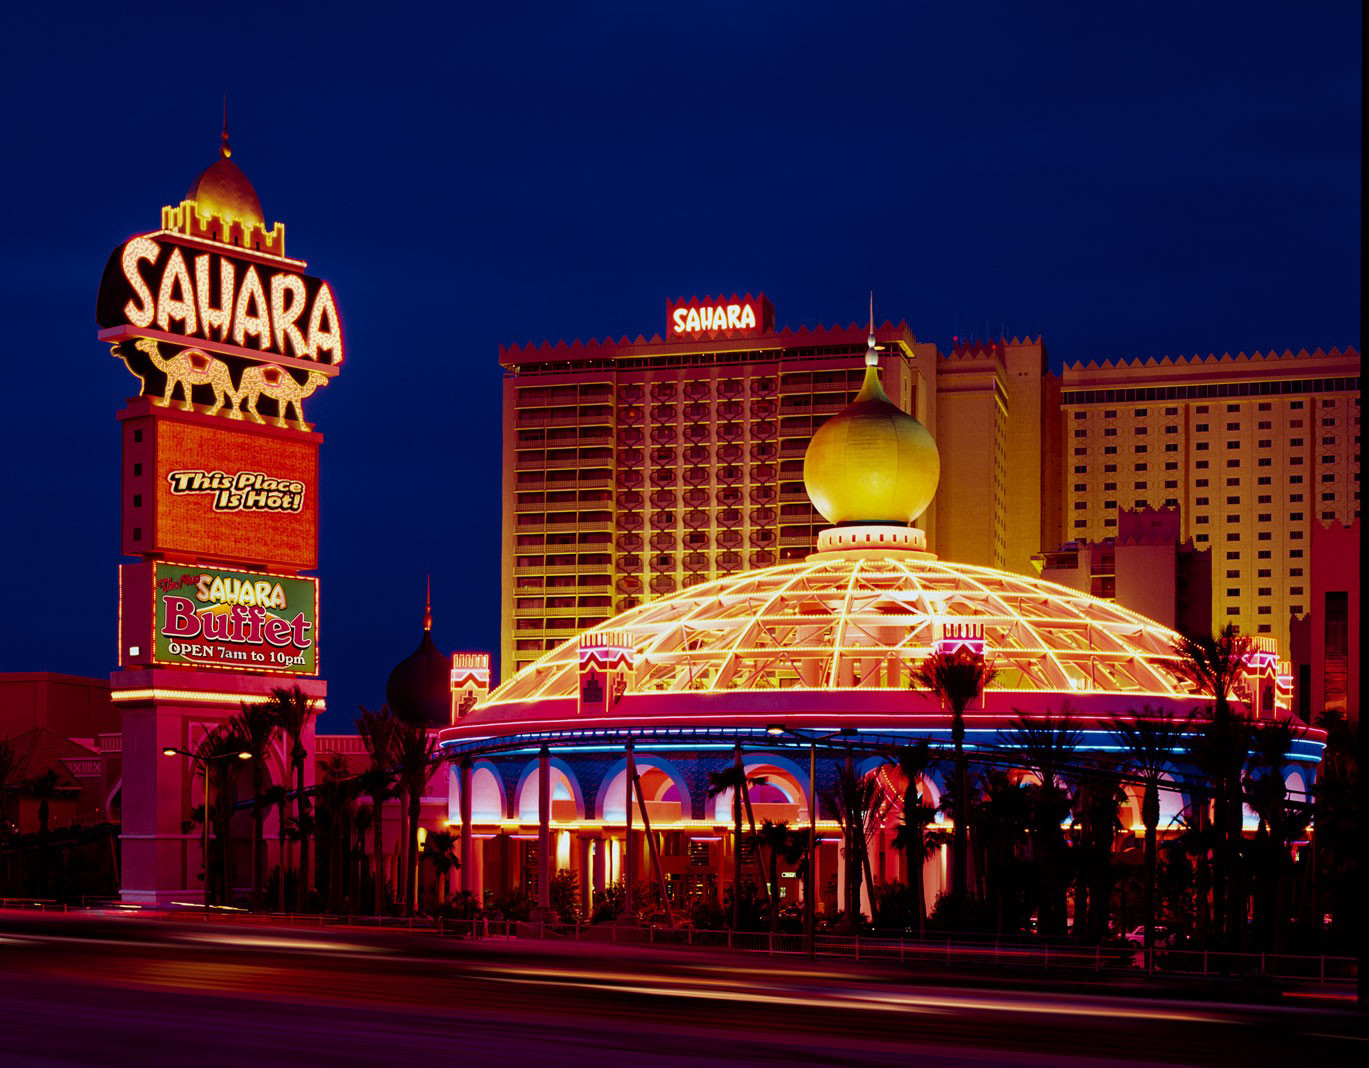 SAHARA Las Vegas - Hotel & Casino